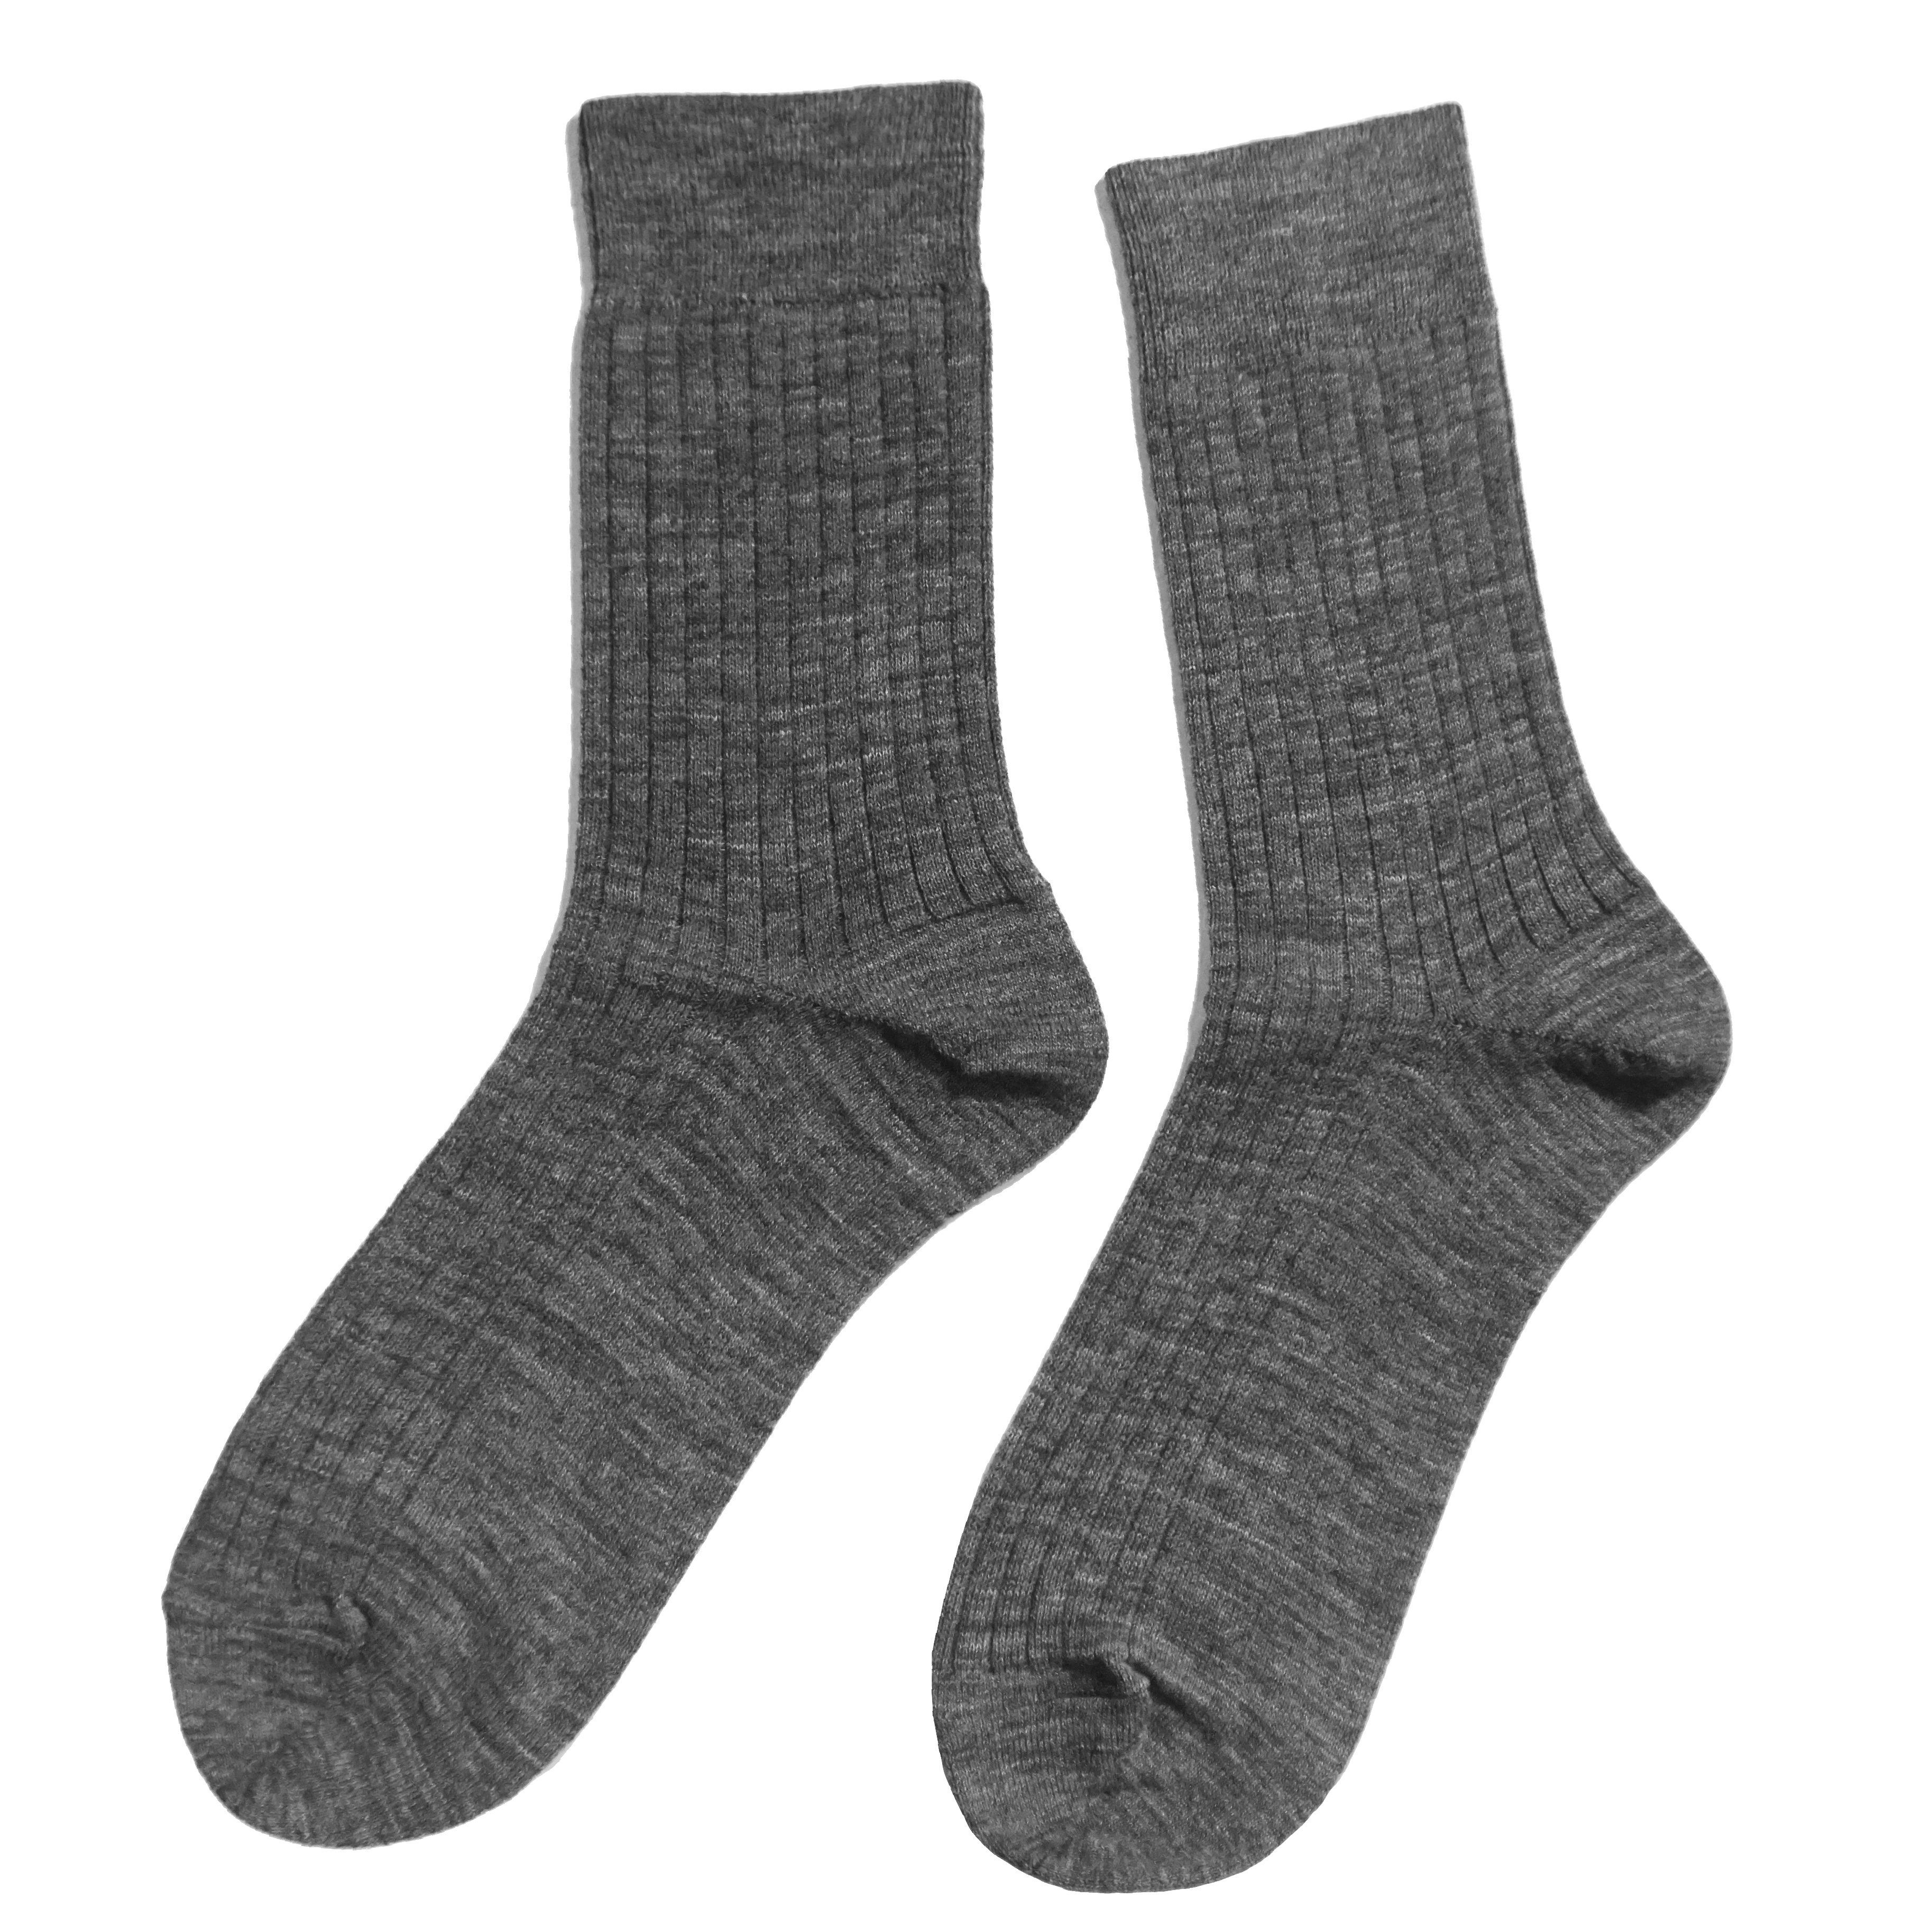 WERI SPEZIALS Strumpfhersteller GmbH Socken »Herren Socken >>5:2 Rippe<<  aus Wolle« online kaufen | OTTO